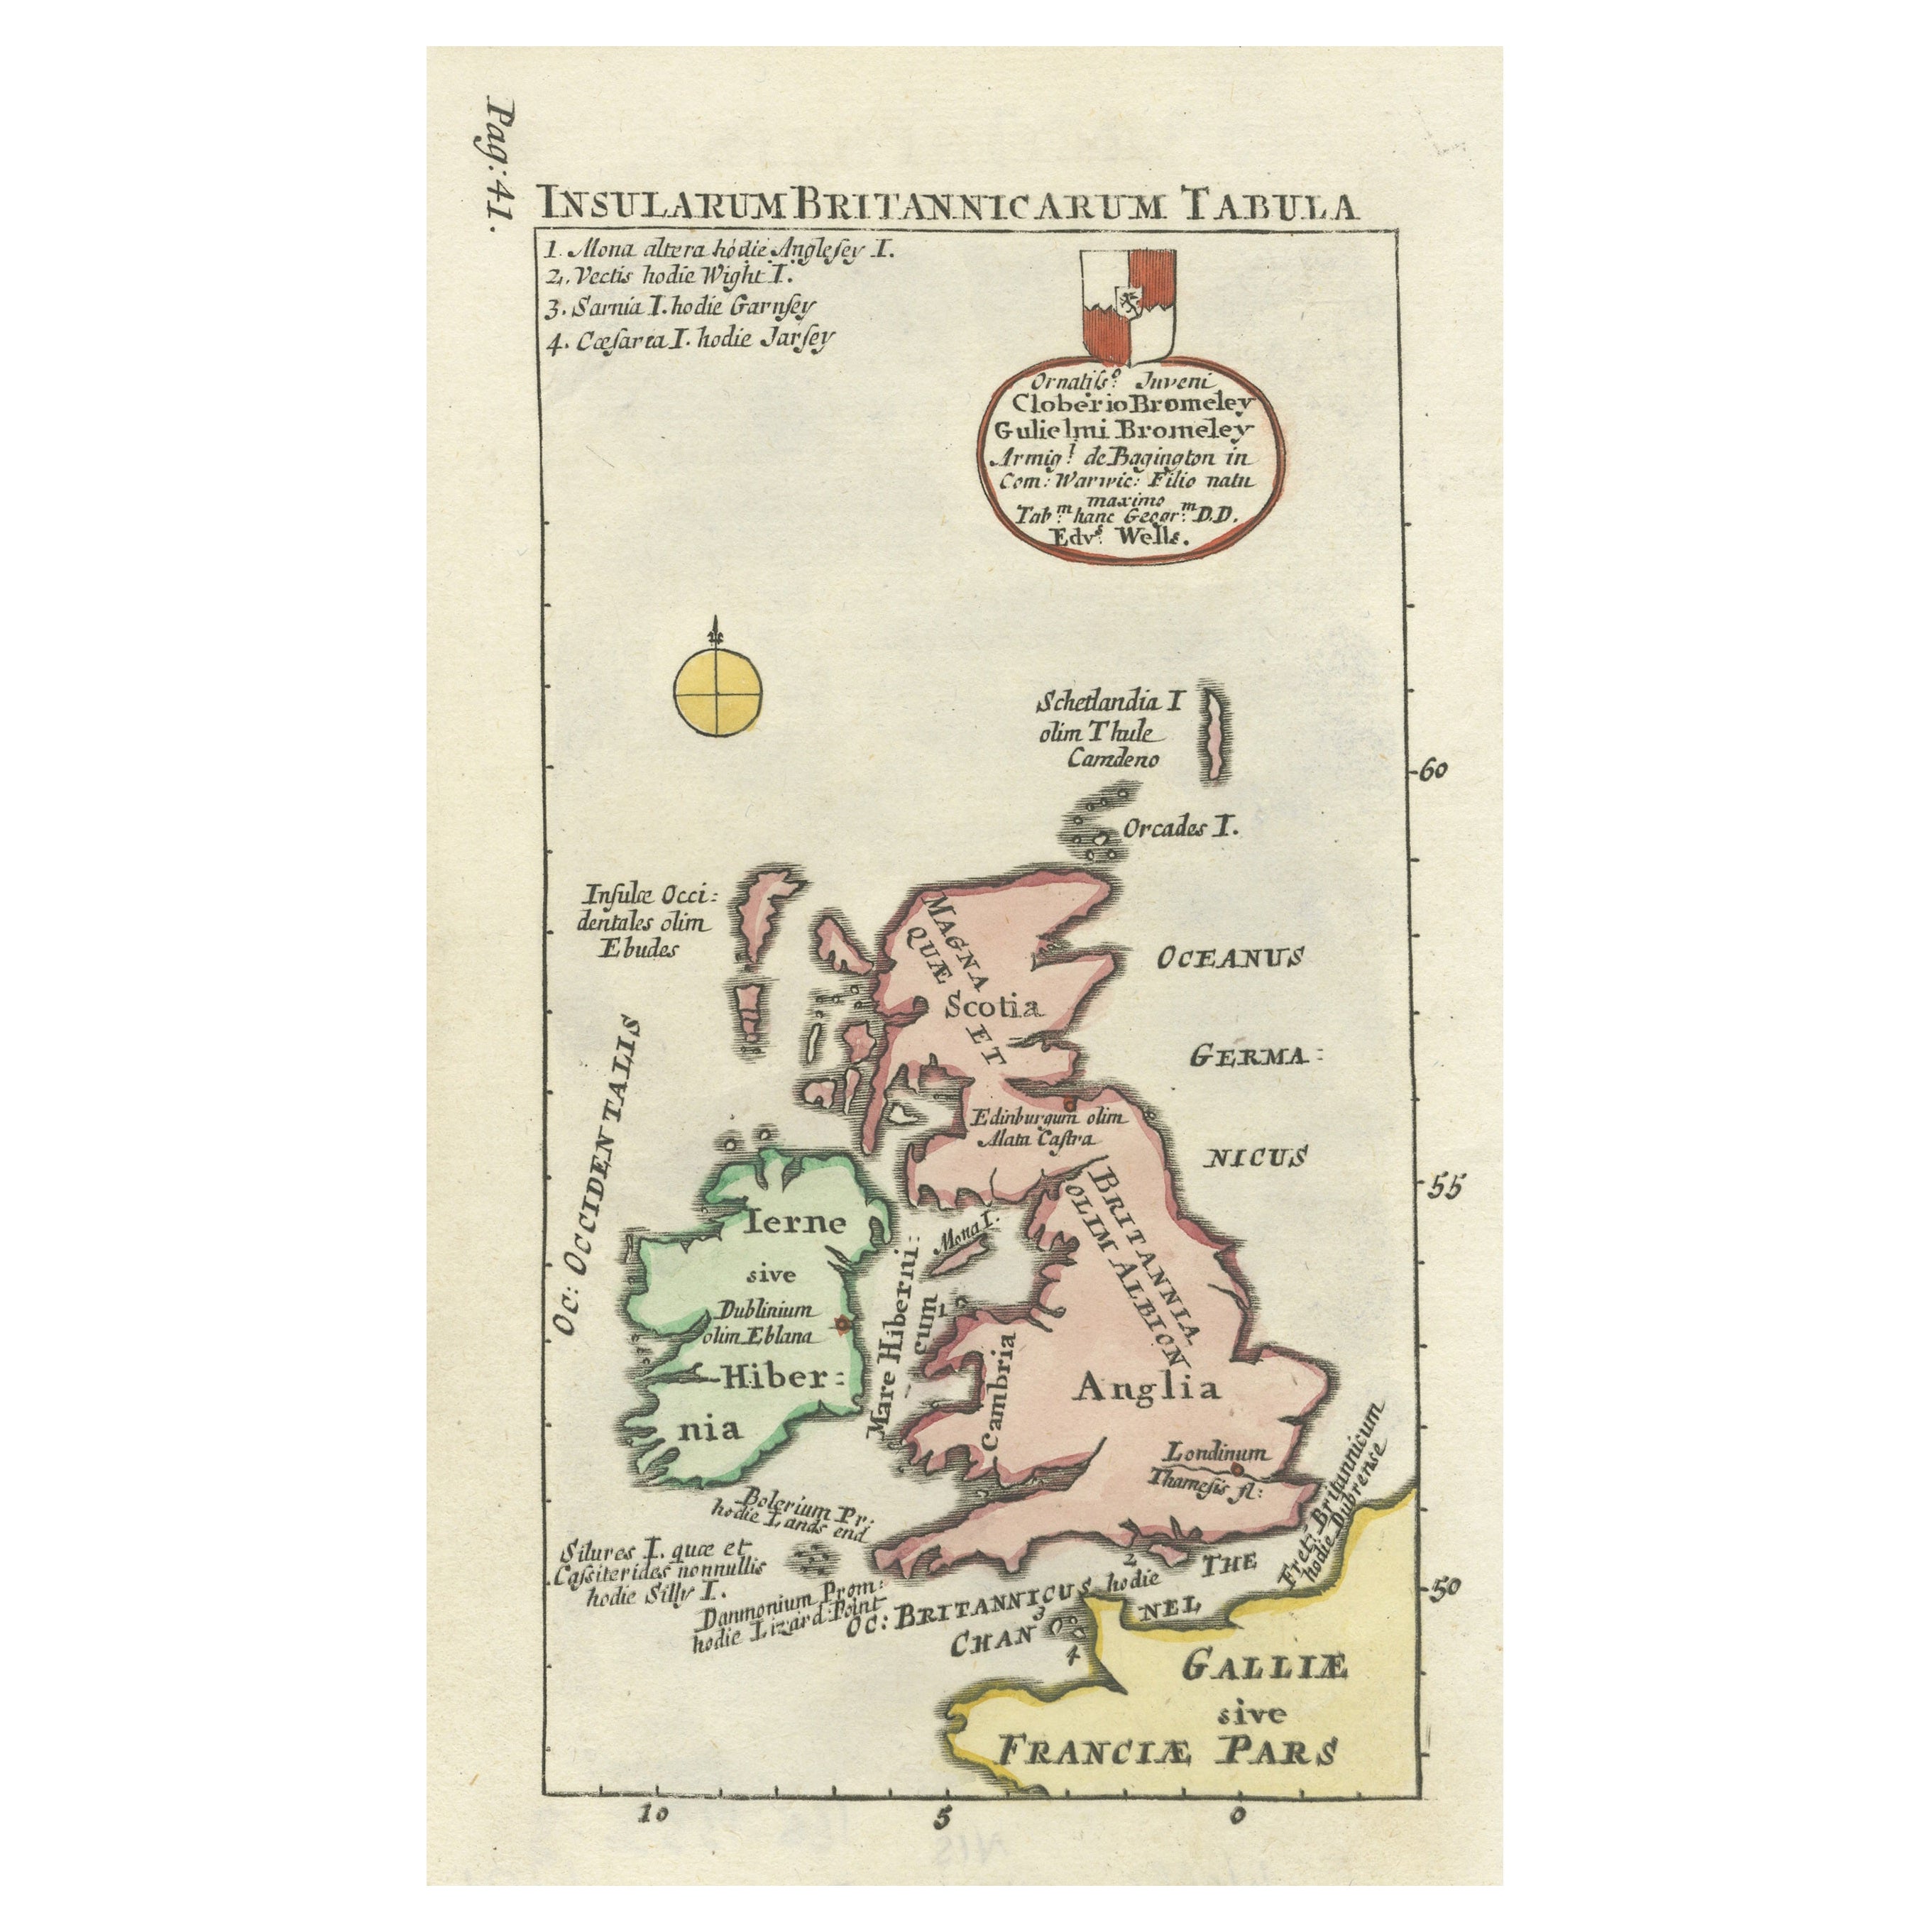 Petite carte intéressante des îles britanniques colorée à la main